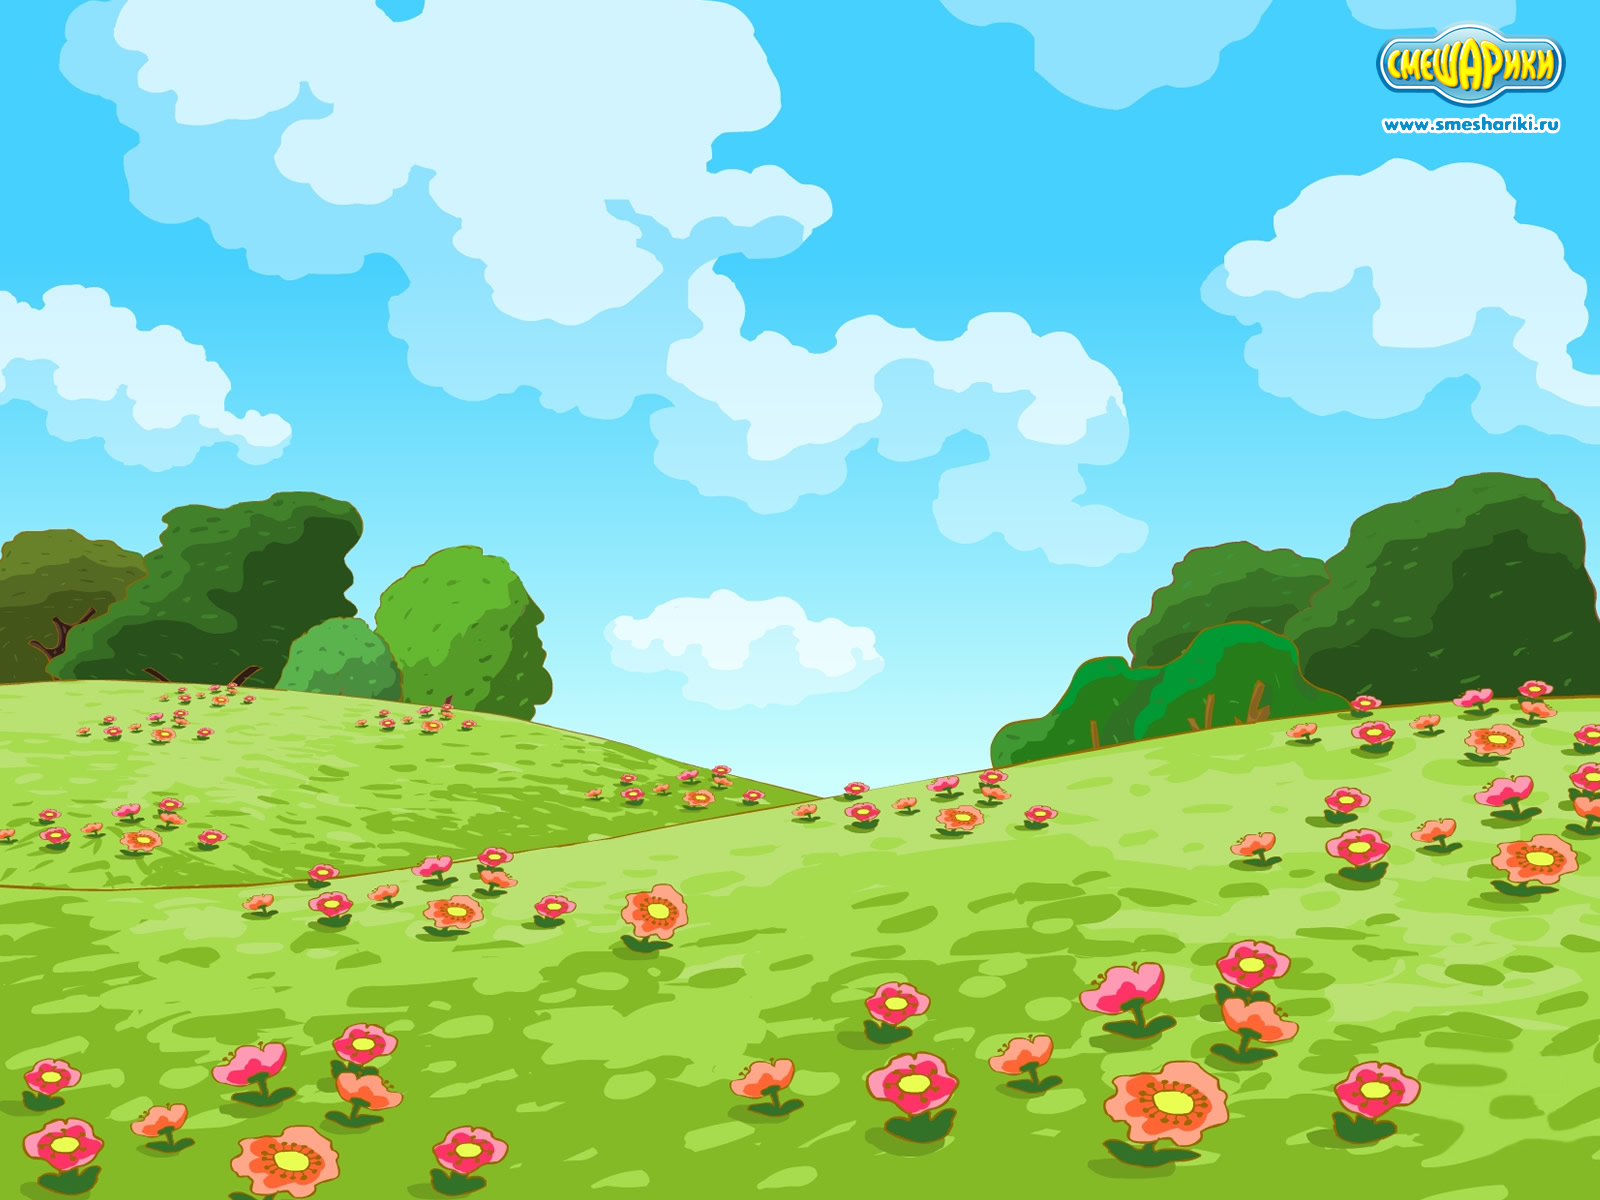 Flower meadow in the cartoon Kikoriki